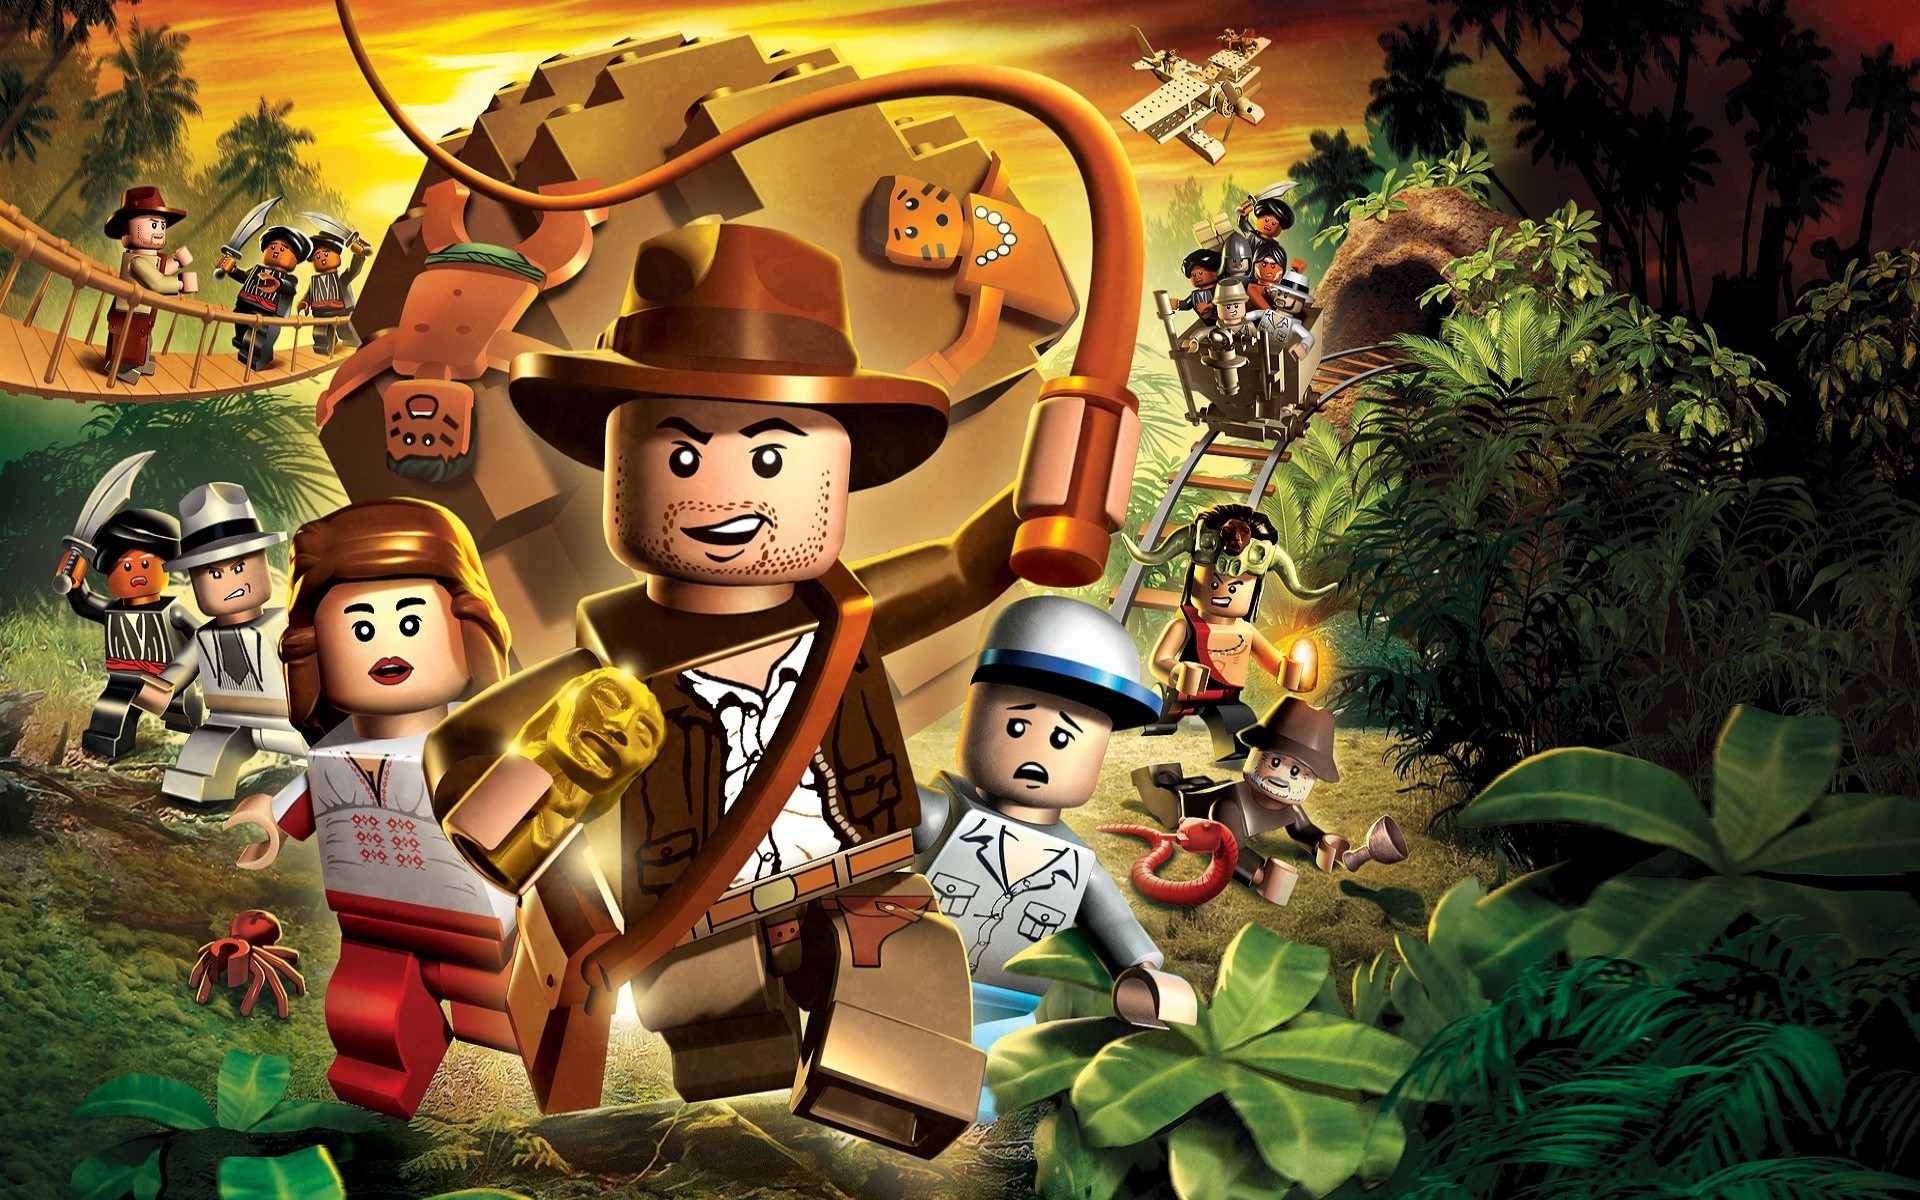 Indiana Jones Lego figurines Widescreen Wallpaper   3606